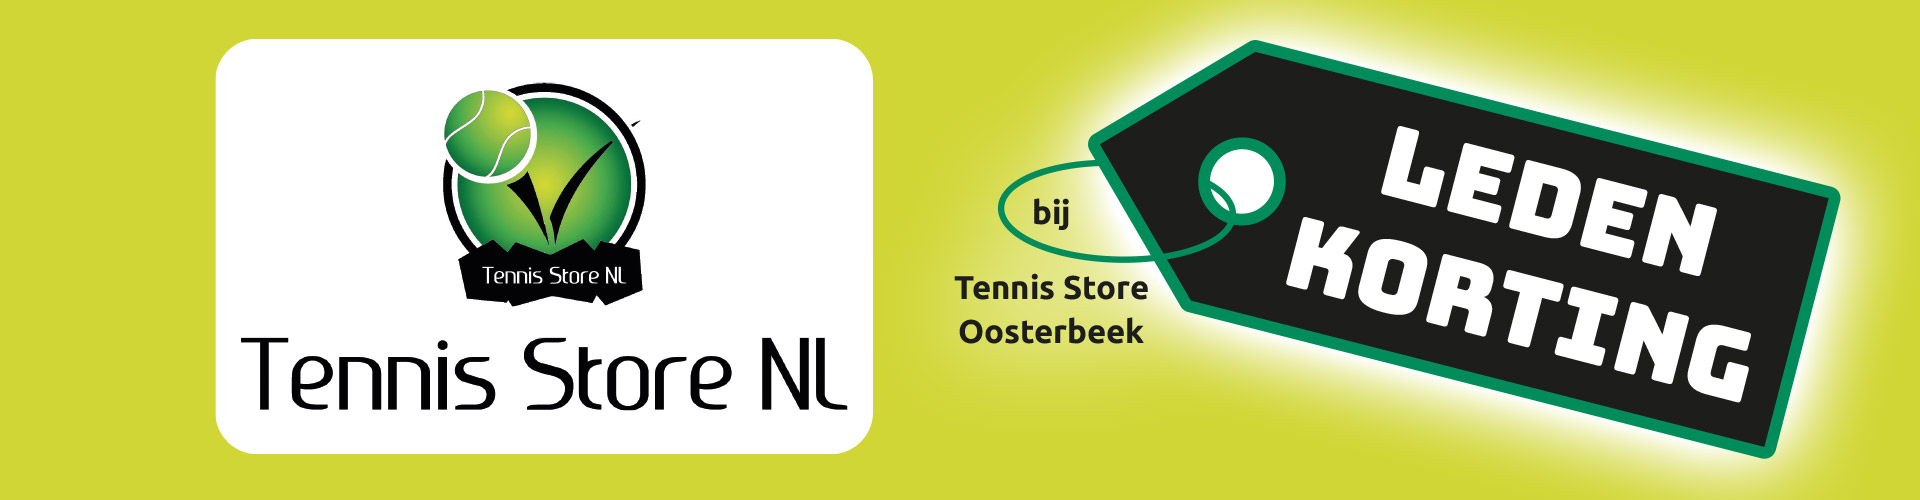 Tennis Store NL Oosterbeek ledenkorting TVDidam